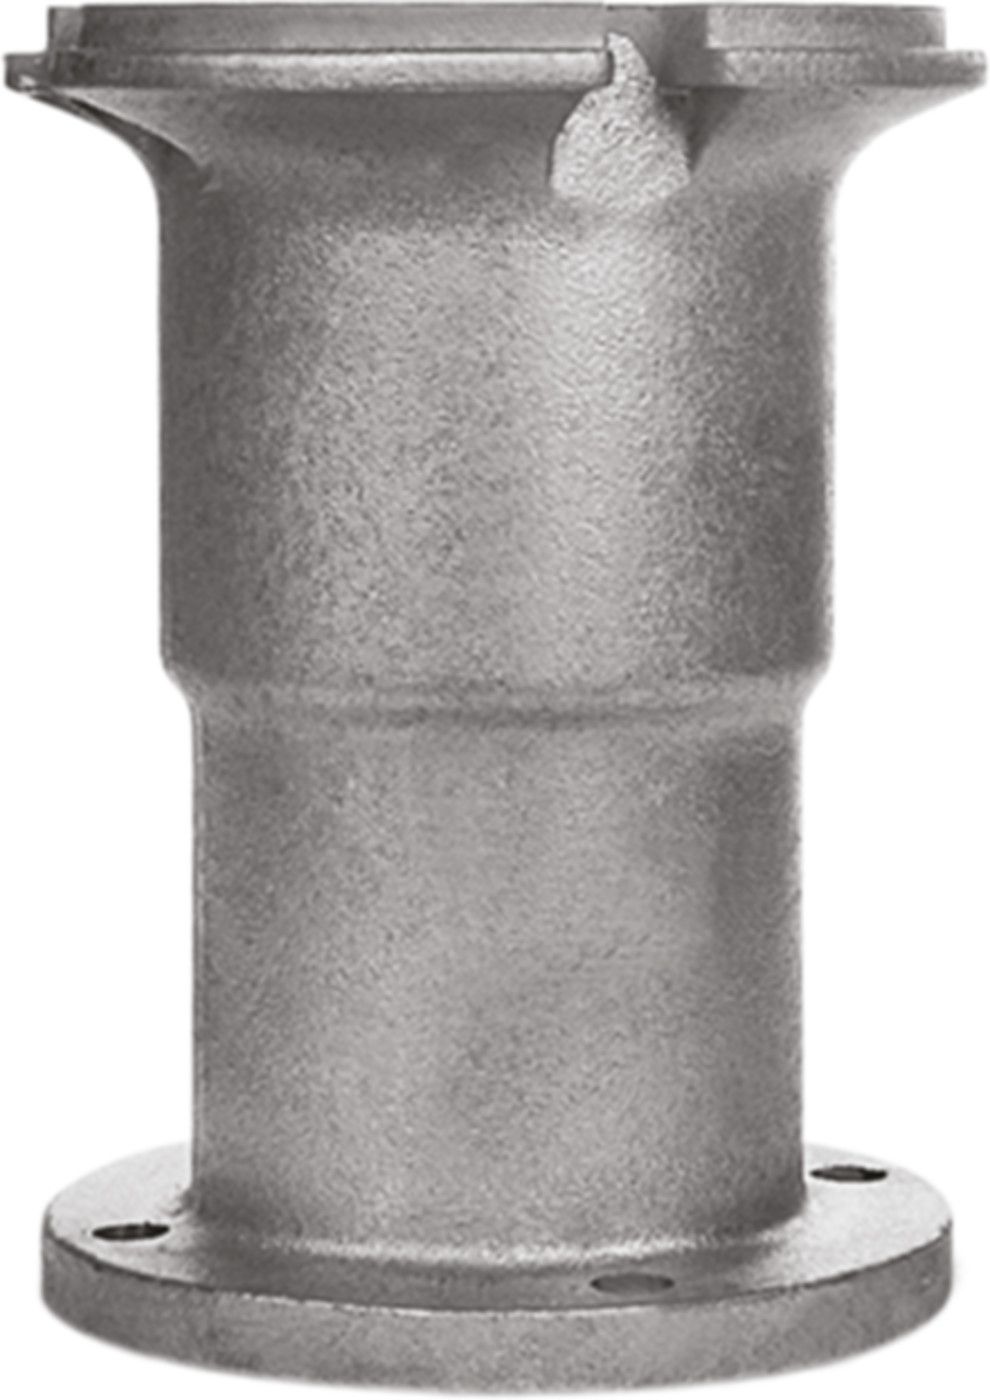 Obere Hydrantenverlängerung Fig. 7990 mit Spindelverlängerung H = 500mm - Von Roll Hydrantenzubehör